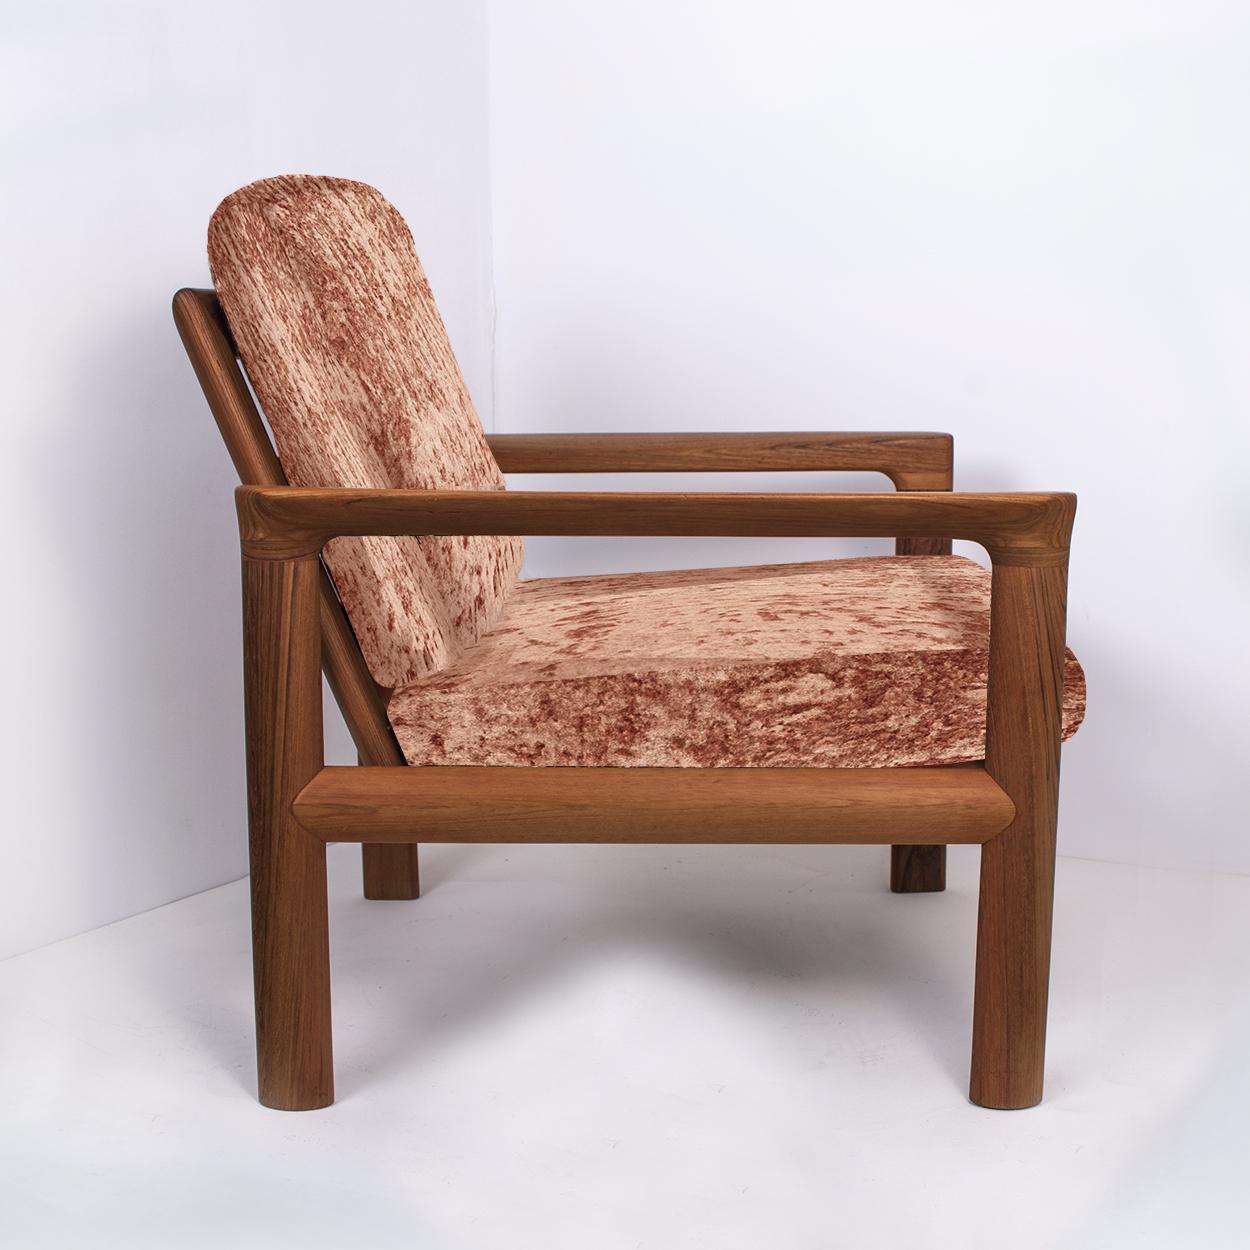 Pair of New Velvet Upholstered Sculptural Easy Chairs by Sven Ellekaer, 1960s For Sale 1